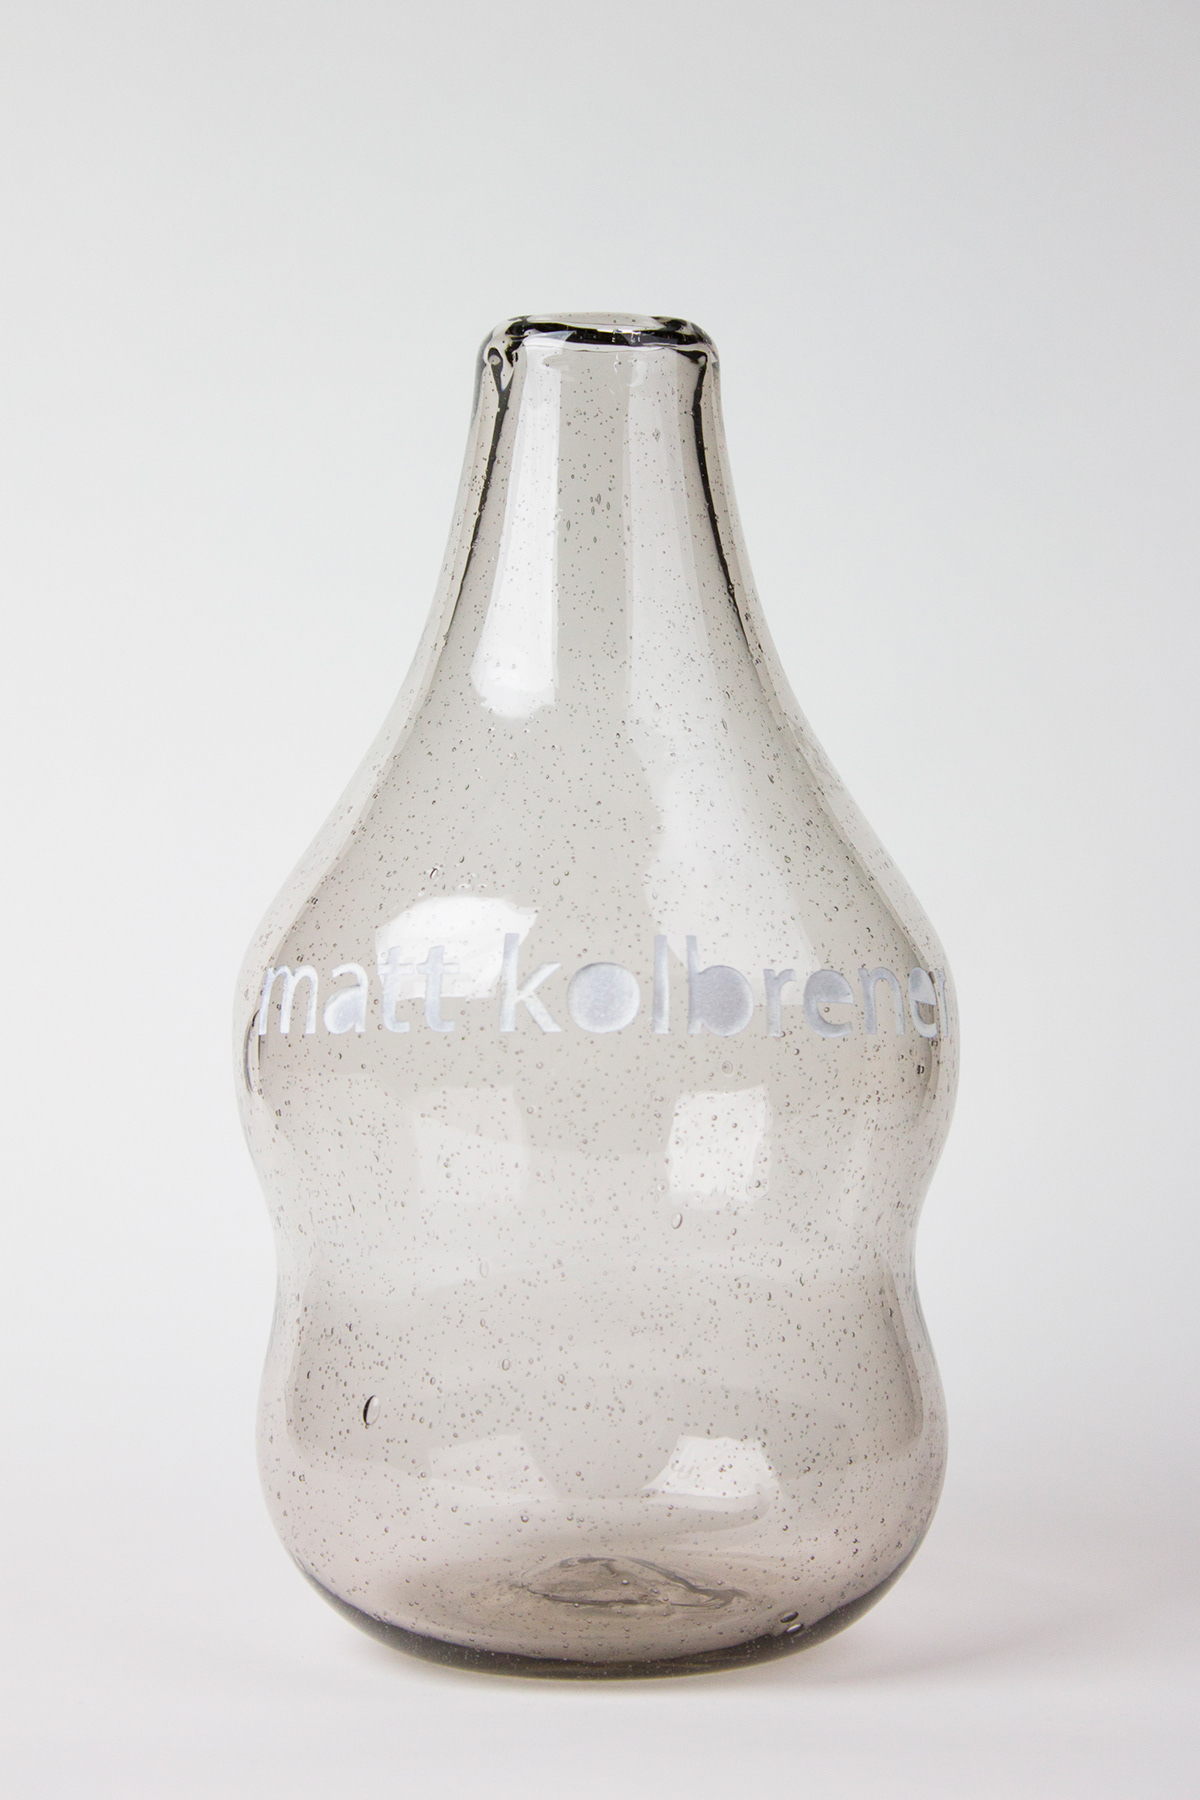 glass Matt Kolbrener Brand Image self titled  names